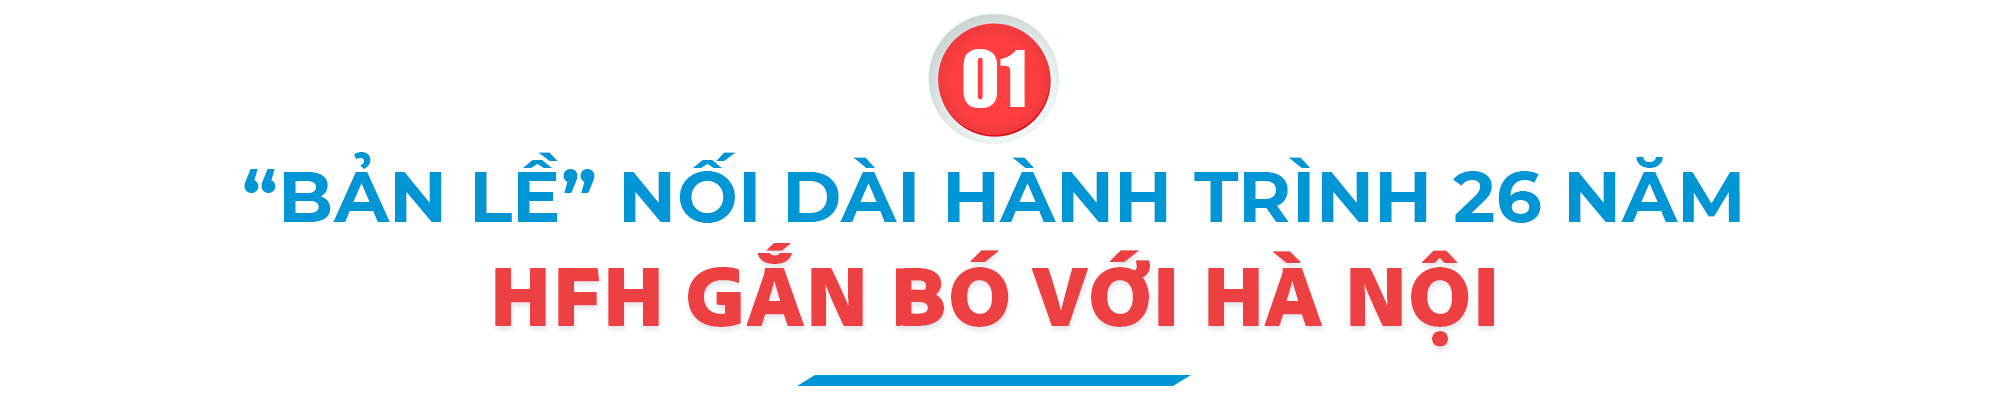 Bệnh viện Việt Pháp Hà Nội vươn tầm cao mới: Bước tiến song hành của mở rộng quy mô và đẩy mạnh trọng tâm chuyên môn y tế. - Ảnh 2.